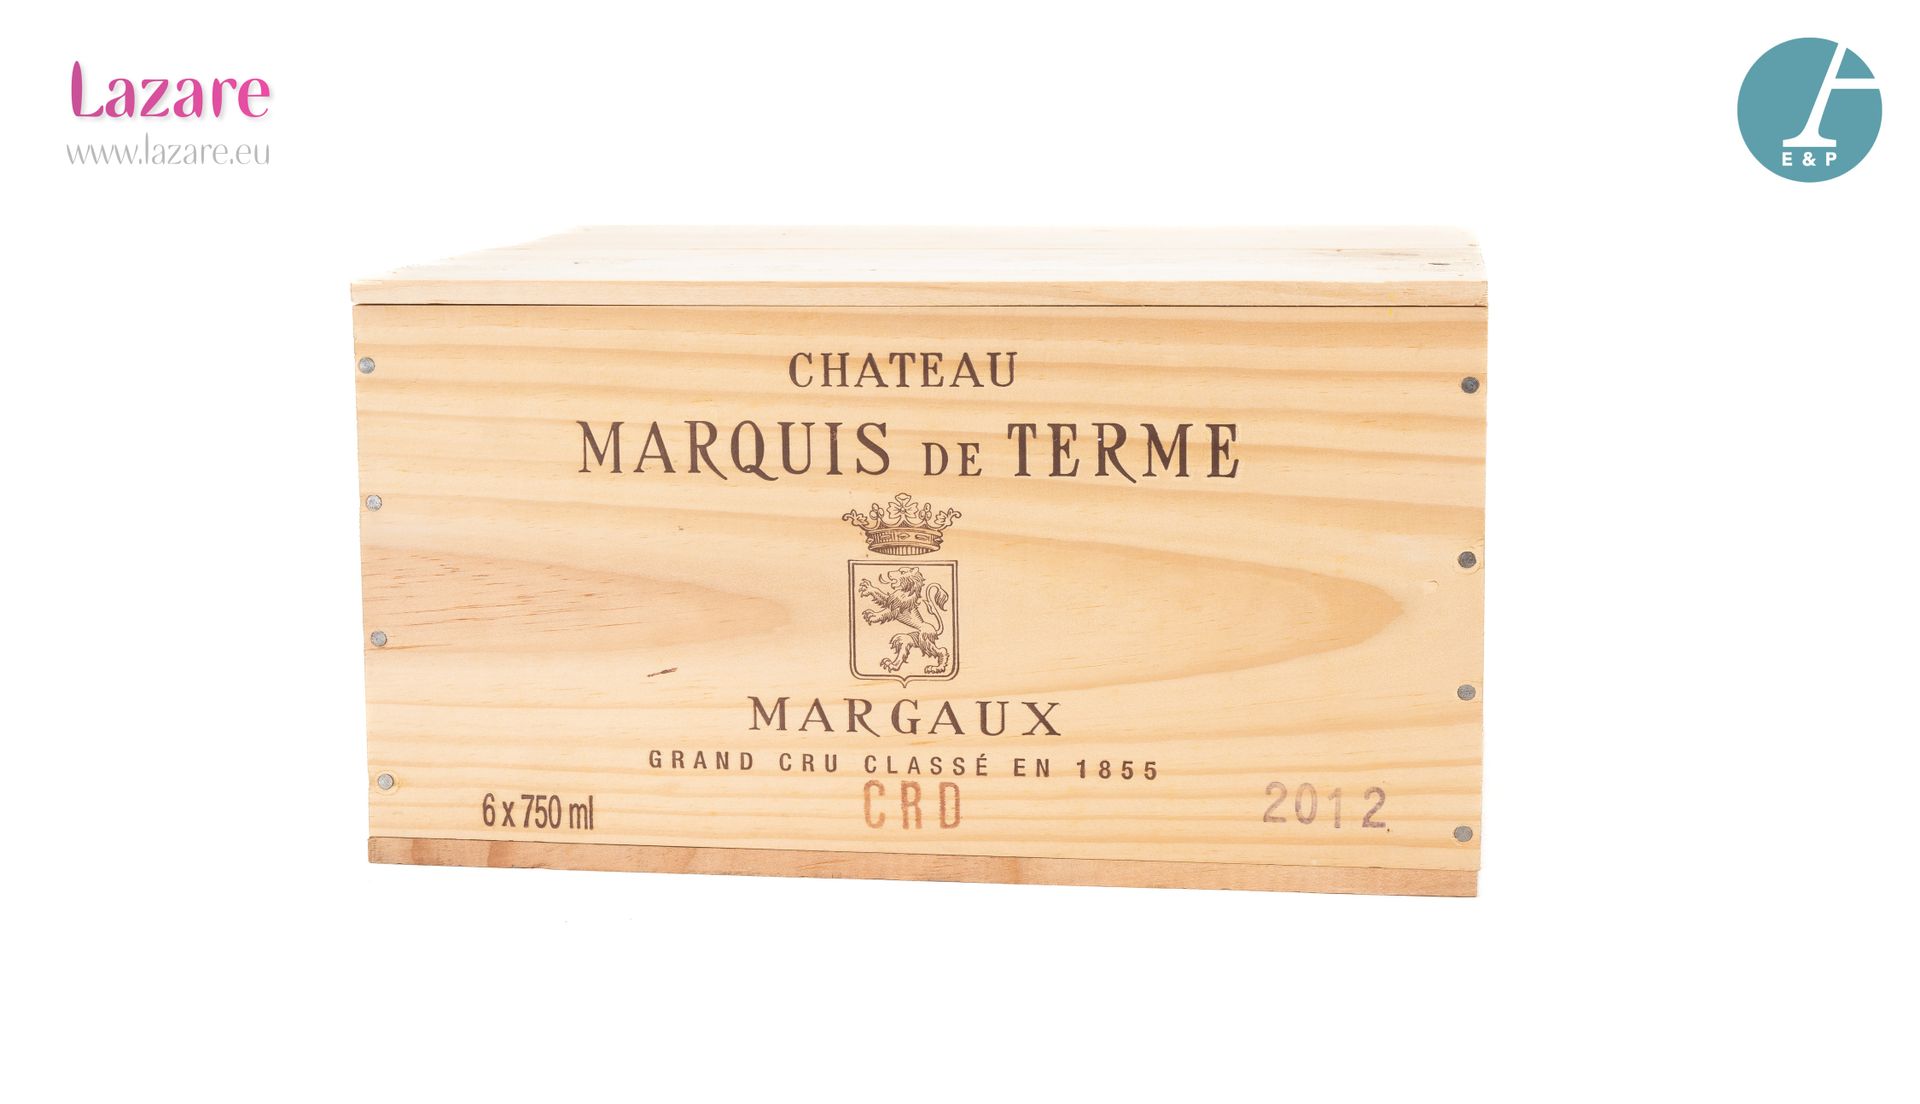 En provenance directe du château 6瓶 CHATEAU MARQUIS DE TERME (原木箱) 2012年玛歌四级酒庄葡萄&hellip;